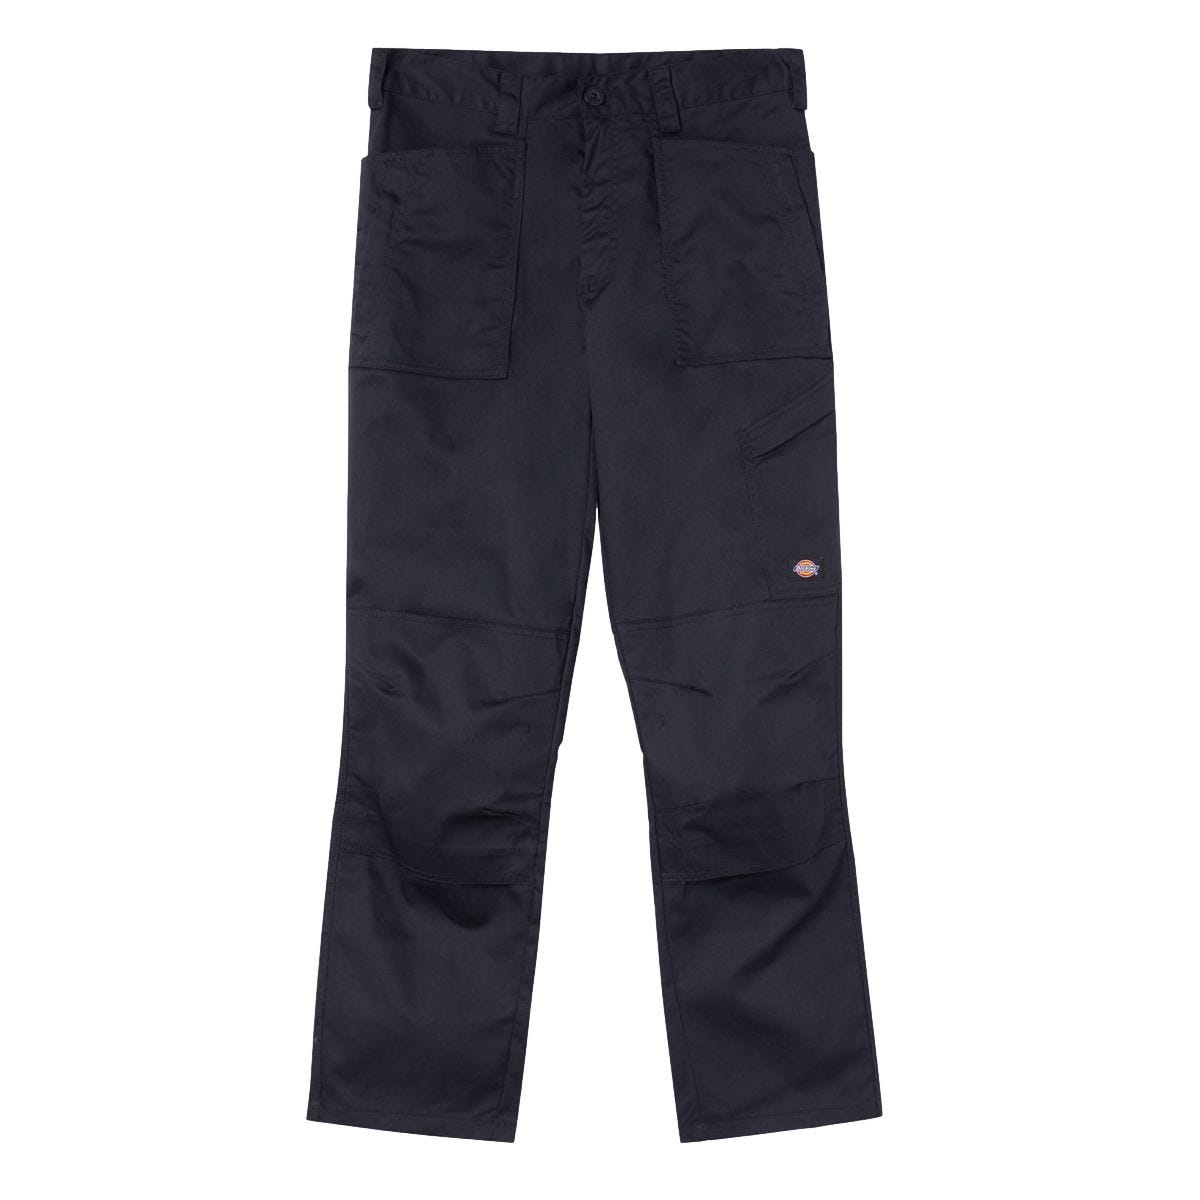 Pantalon de travail Action Flex noir - Dickies - Taille 52 1